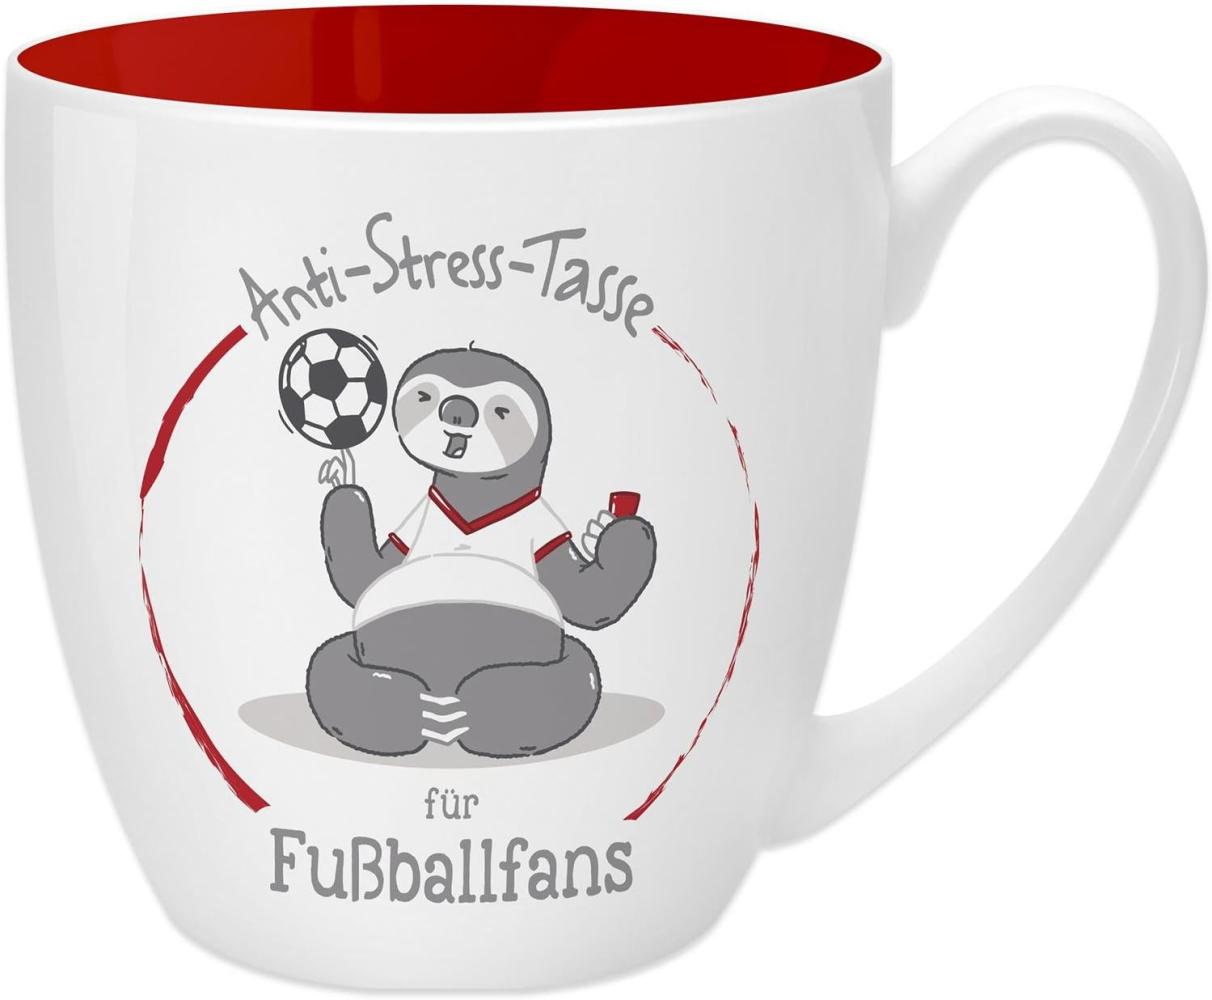 GRUSS & CO Anti-Stress-Tasse Motiv "Fußballfans" | Tasse mit Spruch, 45 cl, New Bone China | Geschenk Fußball | 45516 Bild 1